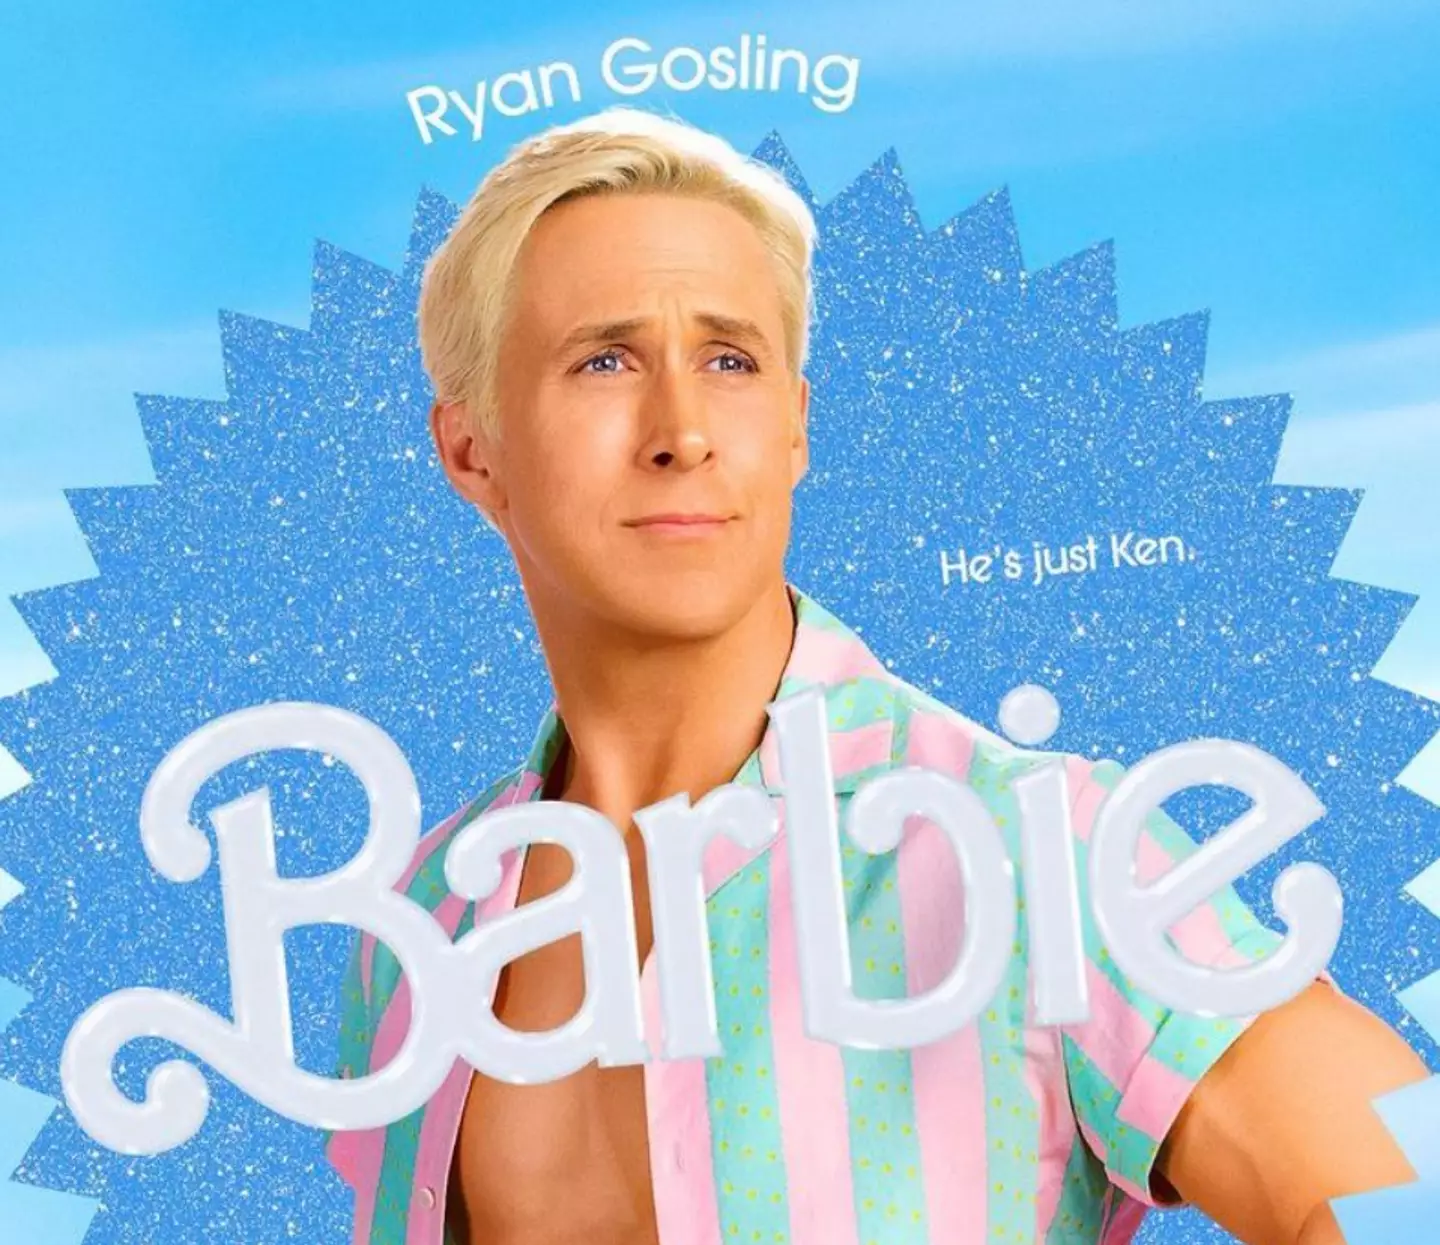 Gosling stars alongside Margot Robbie in Barbie.